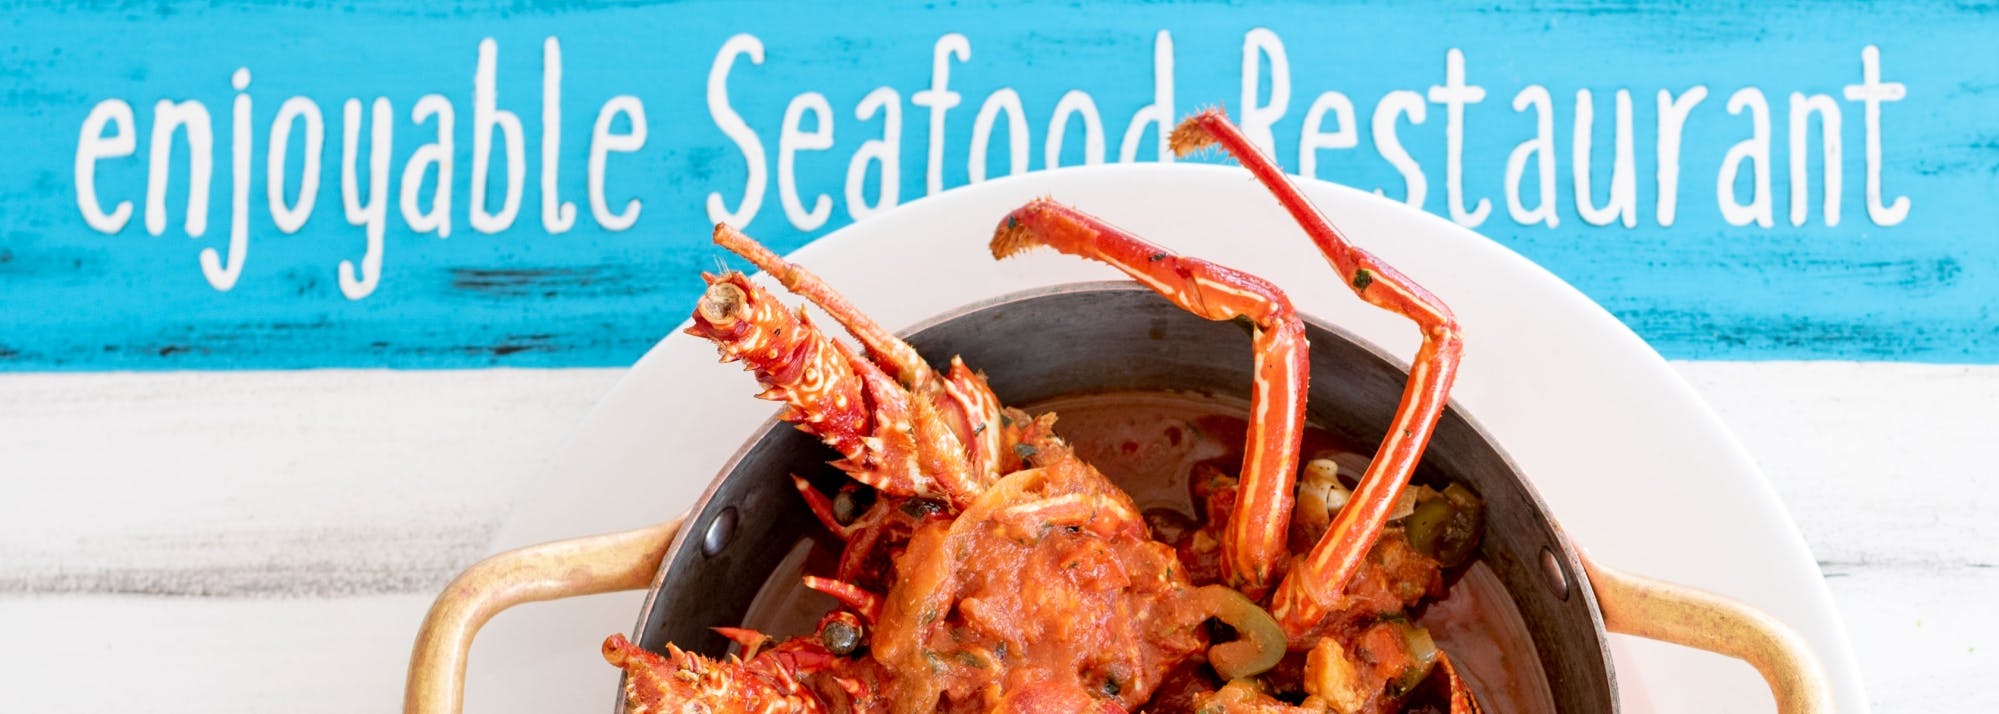 Lobster experience tasting menu in Cape Verde Musement